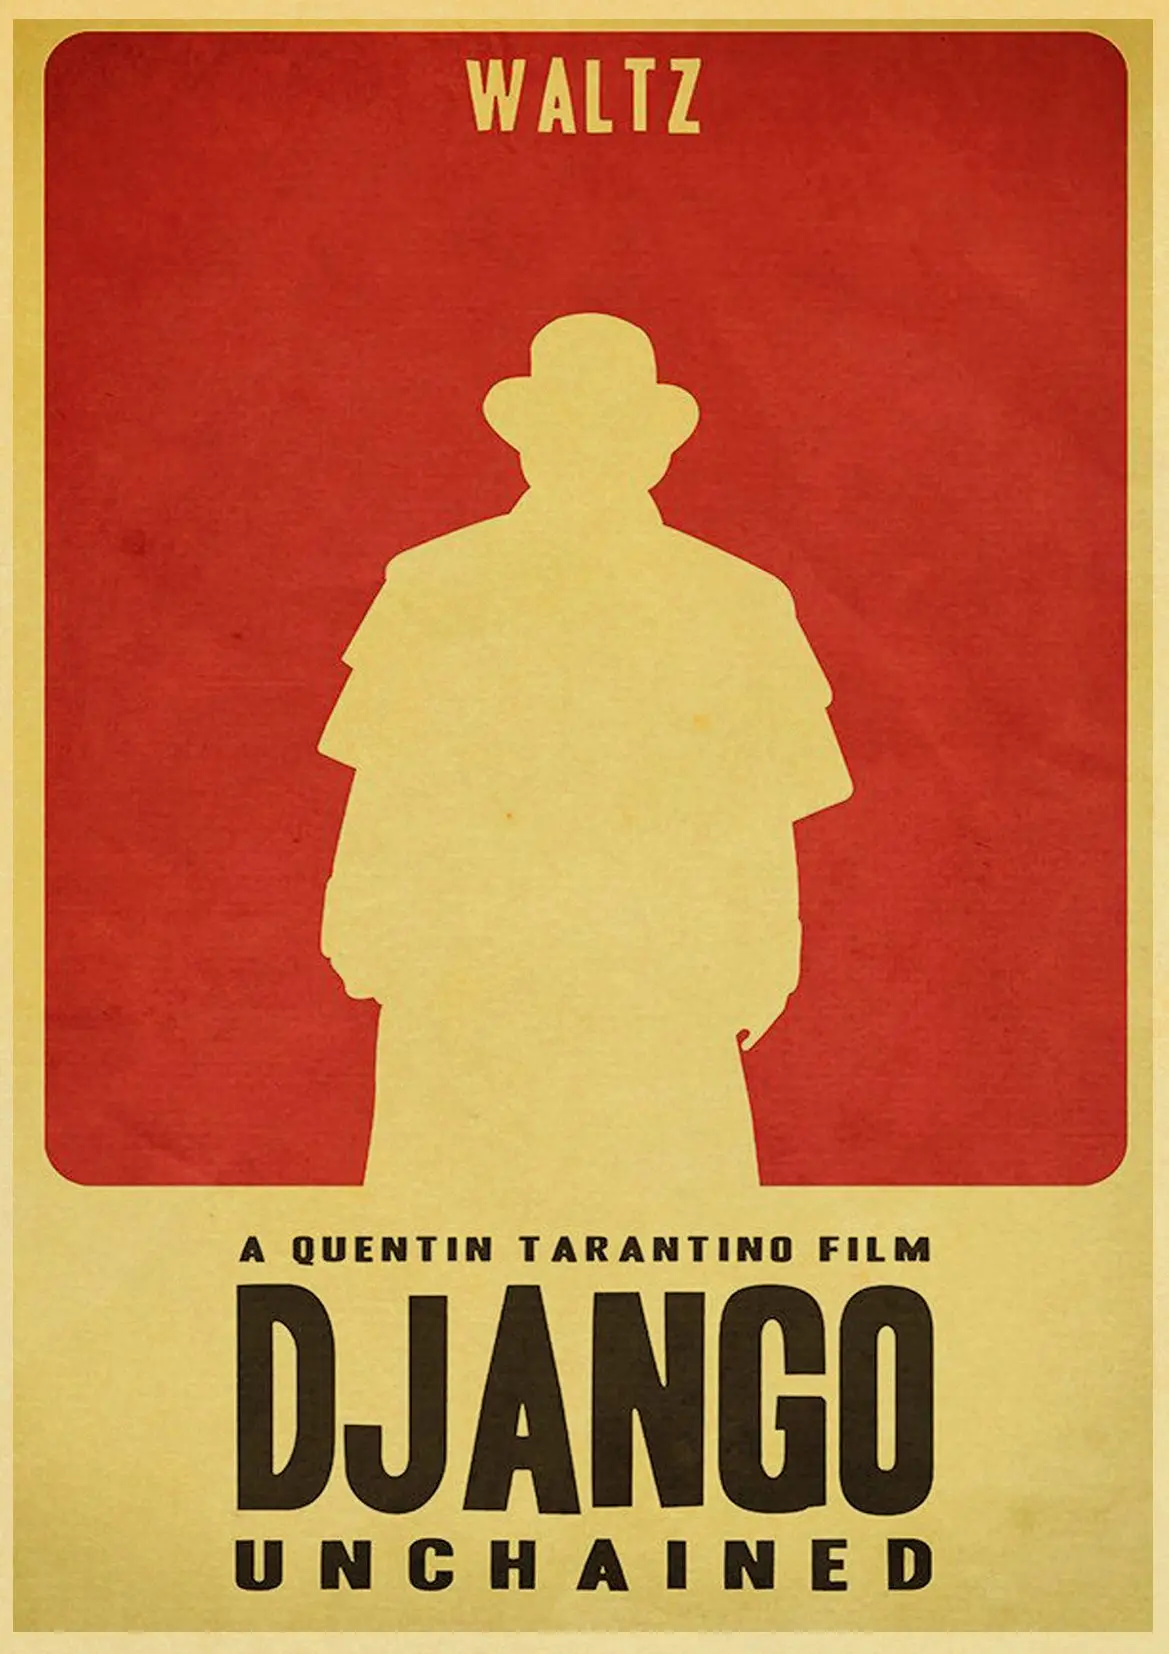 Quentin Tarantino серия фильм django unchained плакат печать на крафтовой бумаге настенная живопись ВИНТАЖНЫЙ ПЛАКАТ домашний декор - Цвет: E082